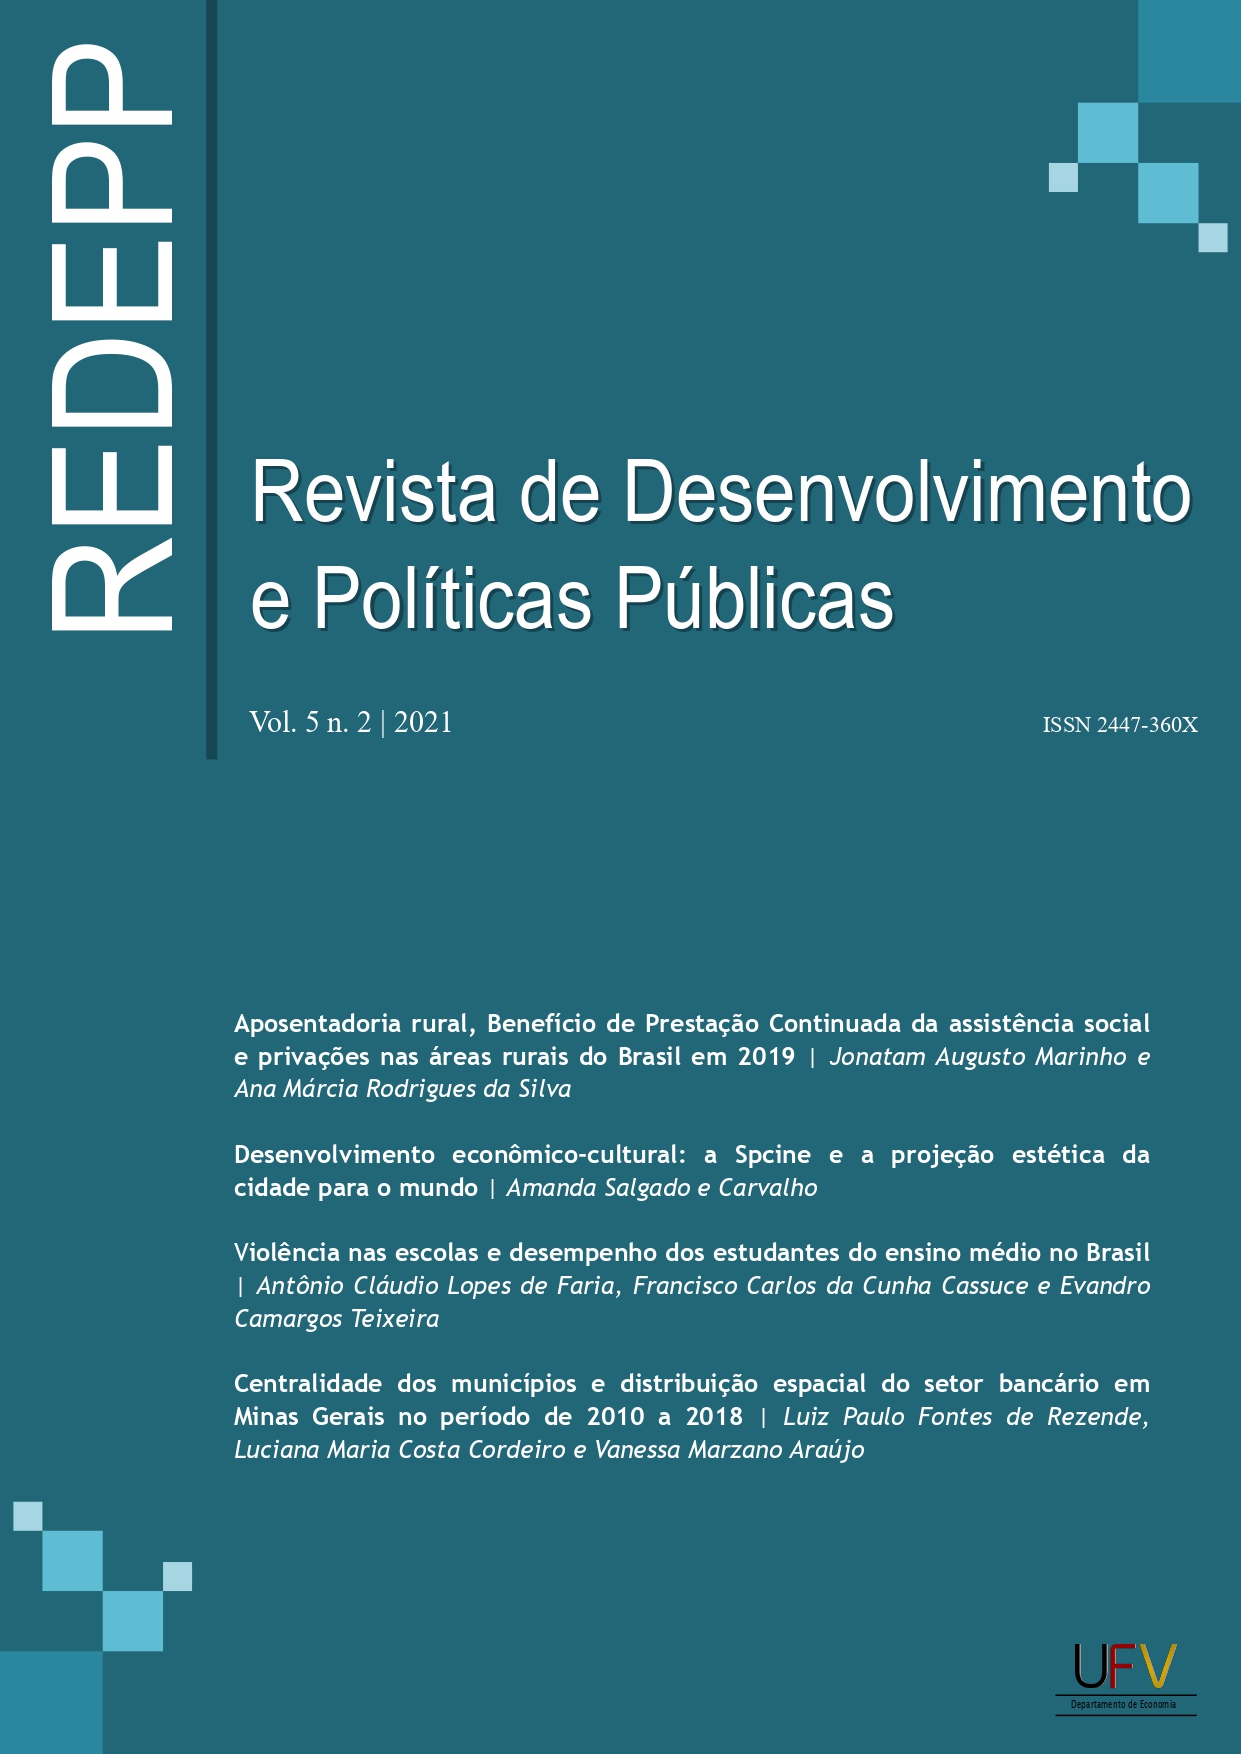 					Visualizar v. 5 n. 2 (2021): Revista de Desenvolvimento e Políticas Públicas [ISSN: 2447-360X]
				